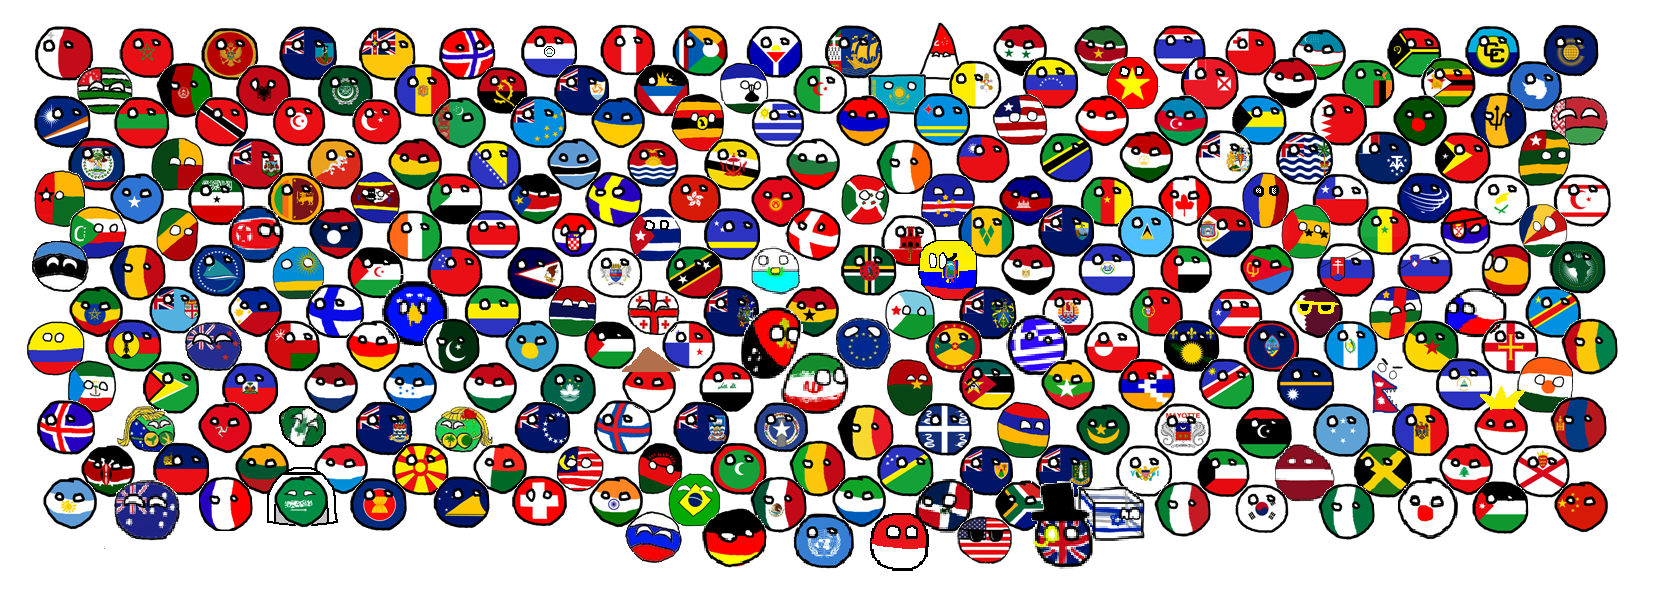 Страны тип игра. Страны в виде шариков. Кантриболз все страны. Человечки в виде флагов стран. Страны в виде кругов.